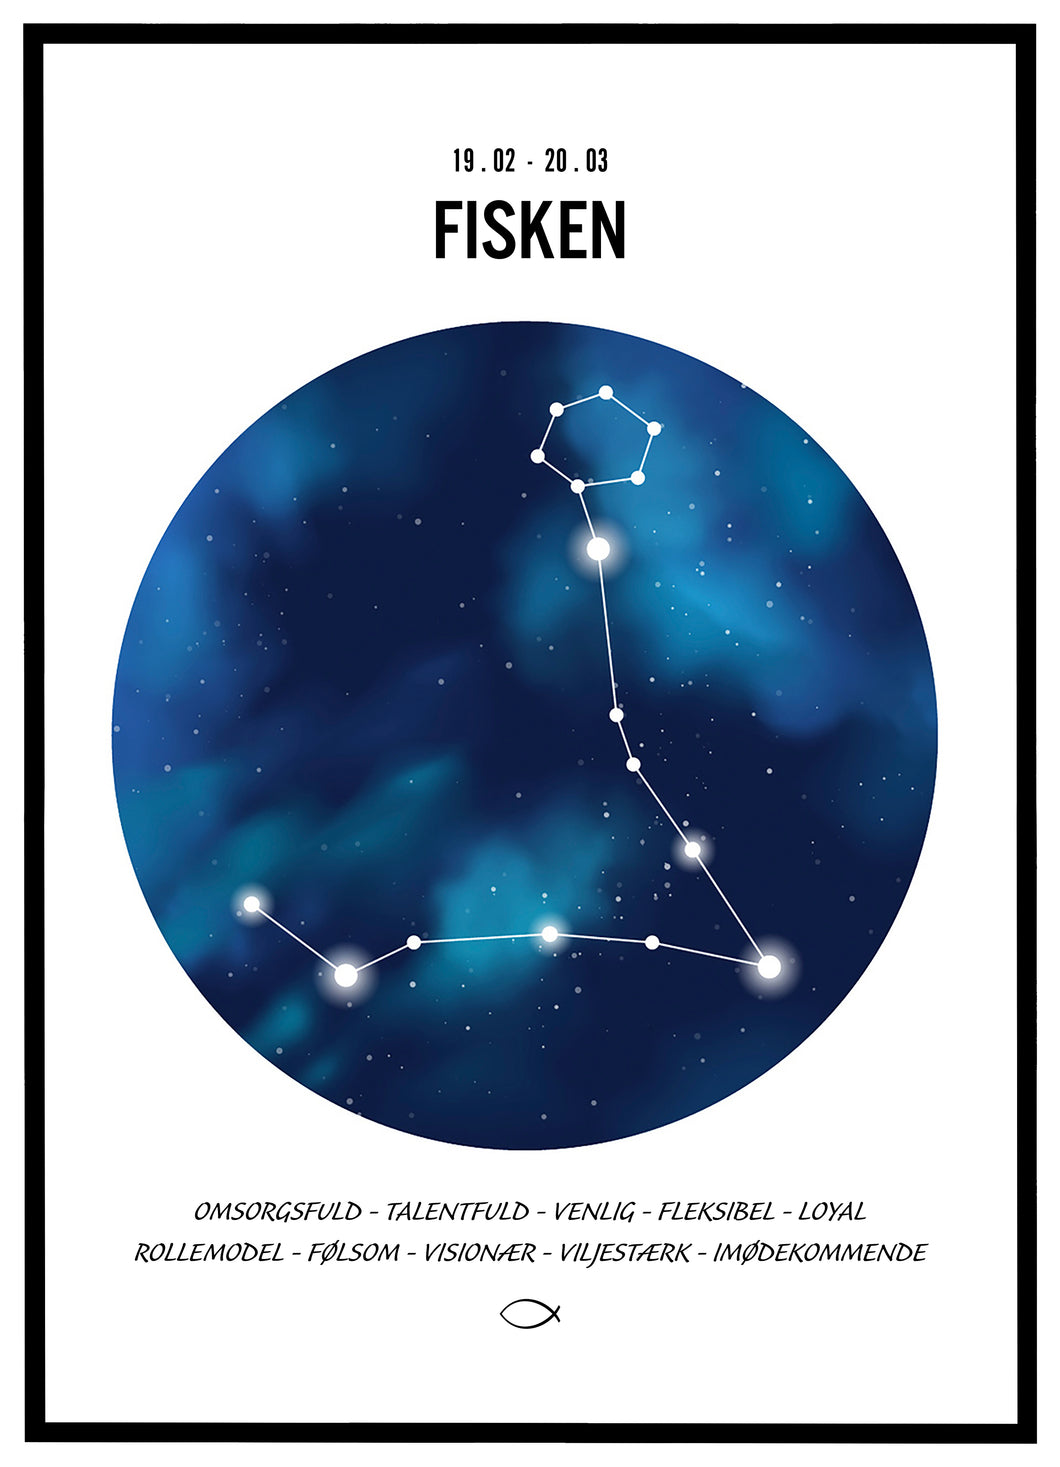 Stjernehimmel plakat - Fisken